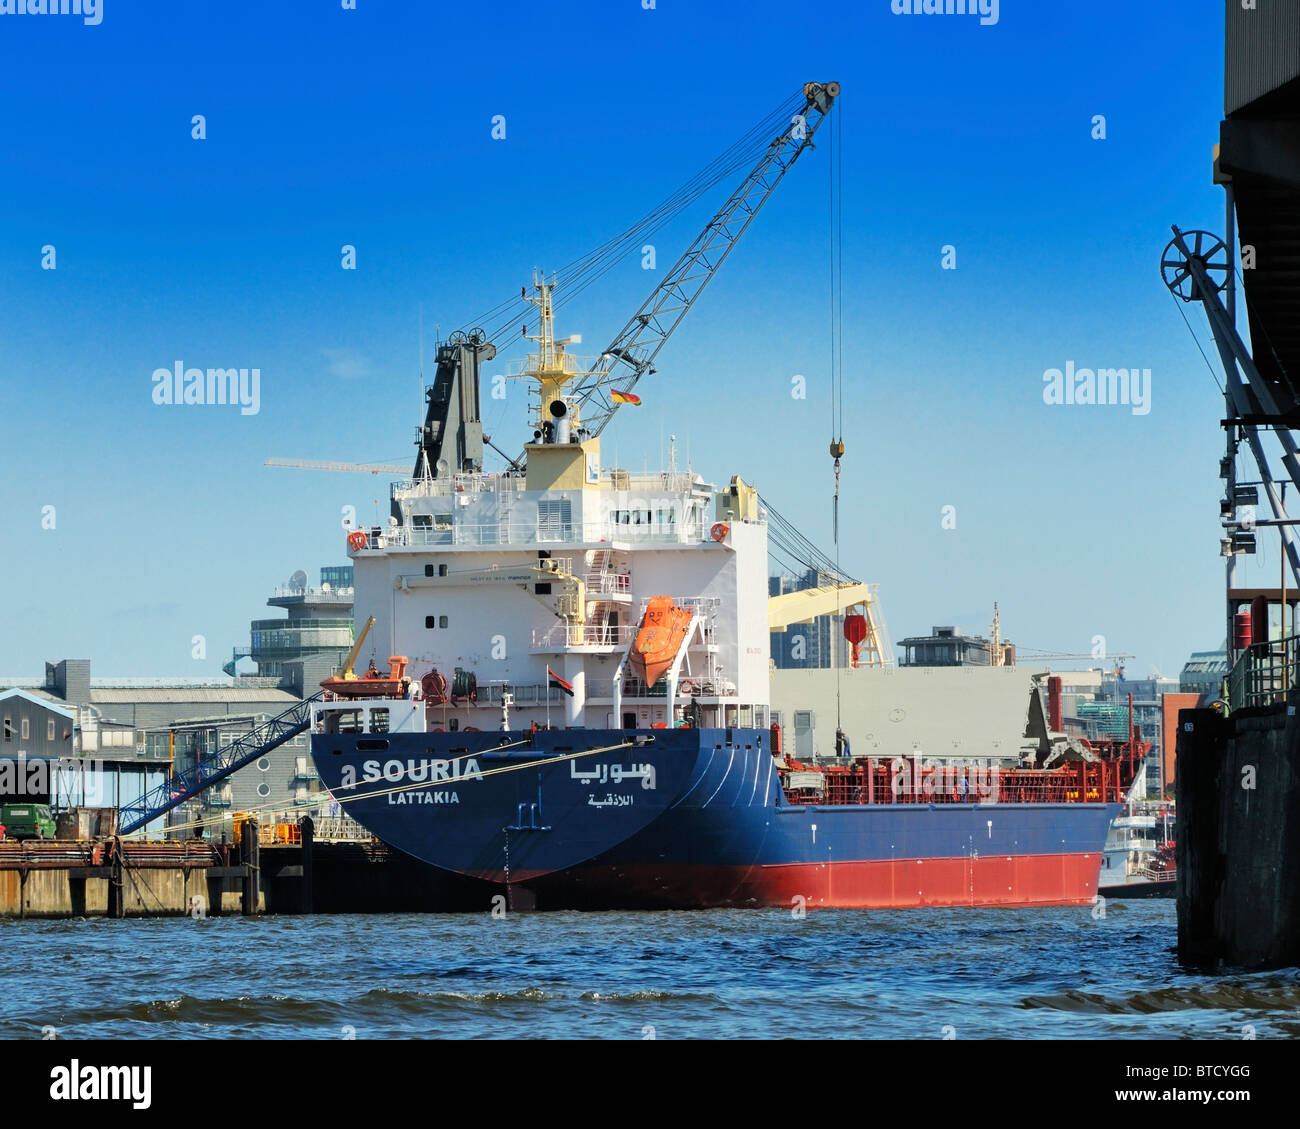 SOURIA (Rufzeichen), einem trockenen Frachtschiff fährt unter der Flagge der syrischen arabischen Republik, ist der Hafen Hamburg, Deutschland geladen. Stockfoto